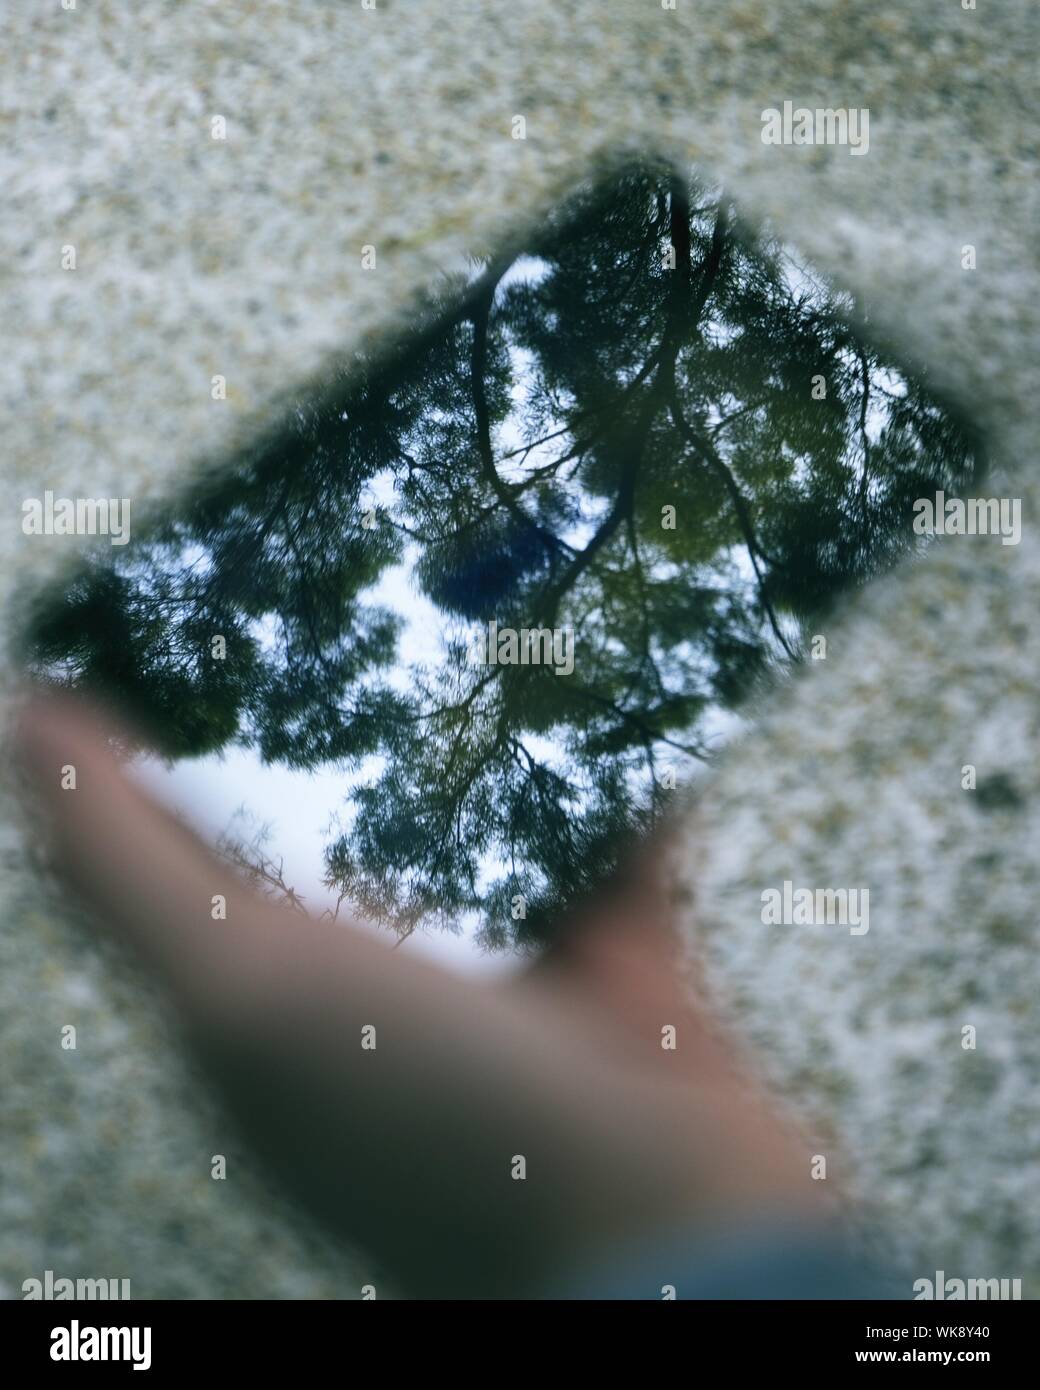 Immagine ritagliata della mano che tiene il vetro con riflessioni ad albero Foto Stock